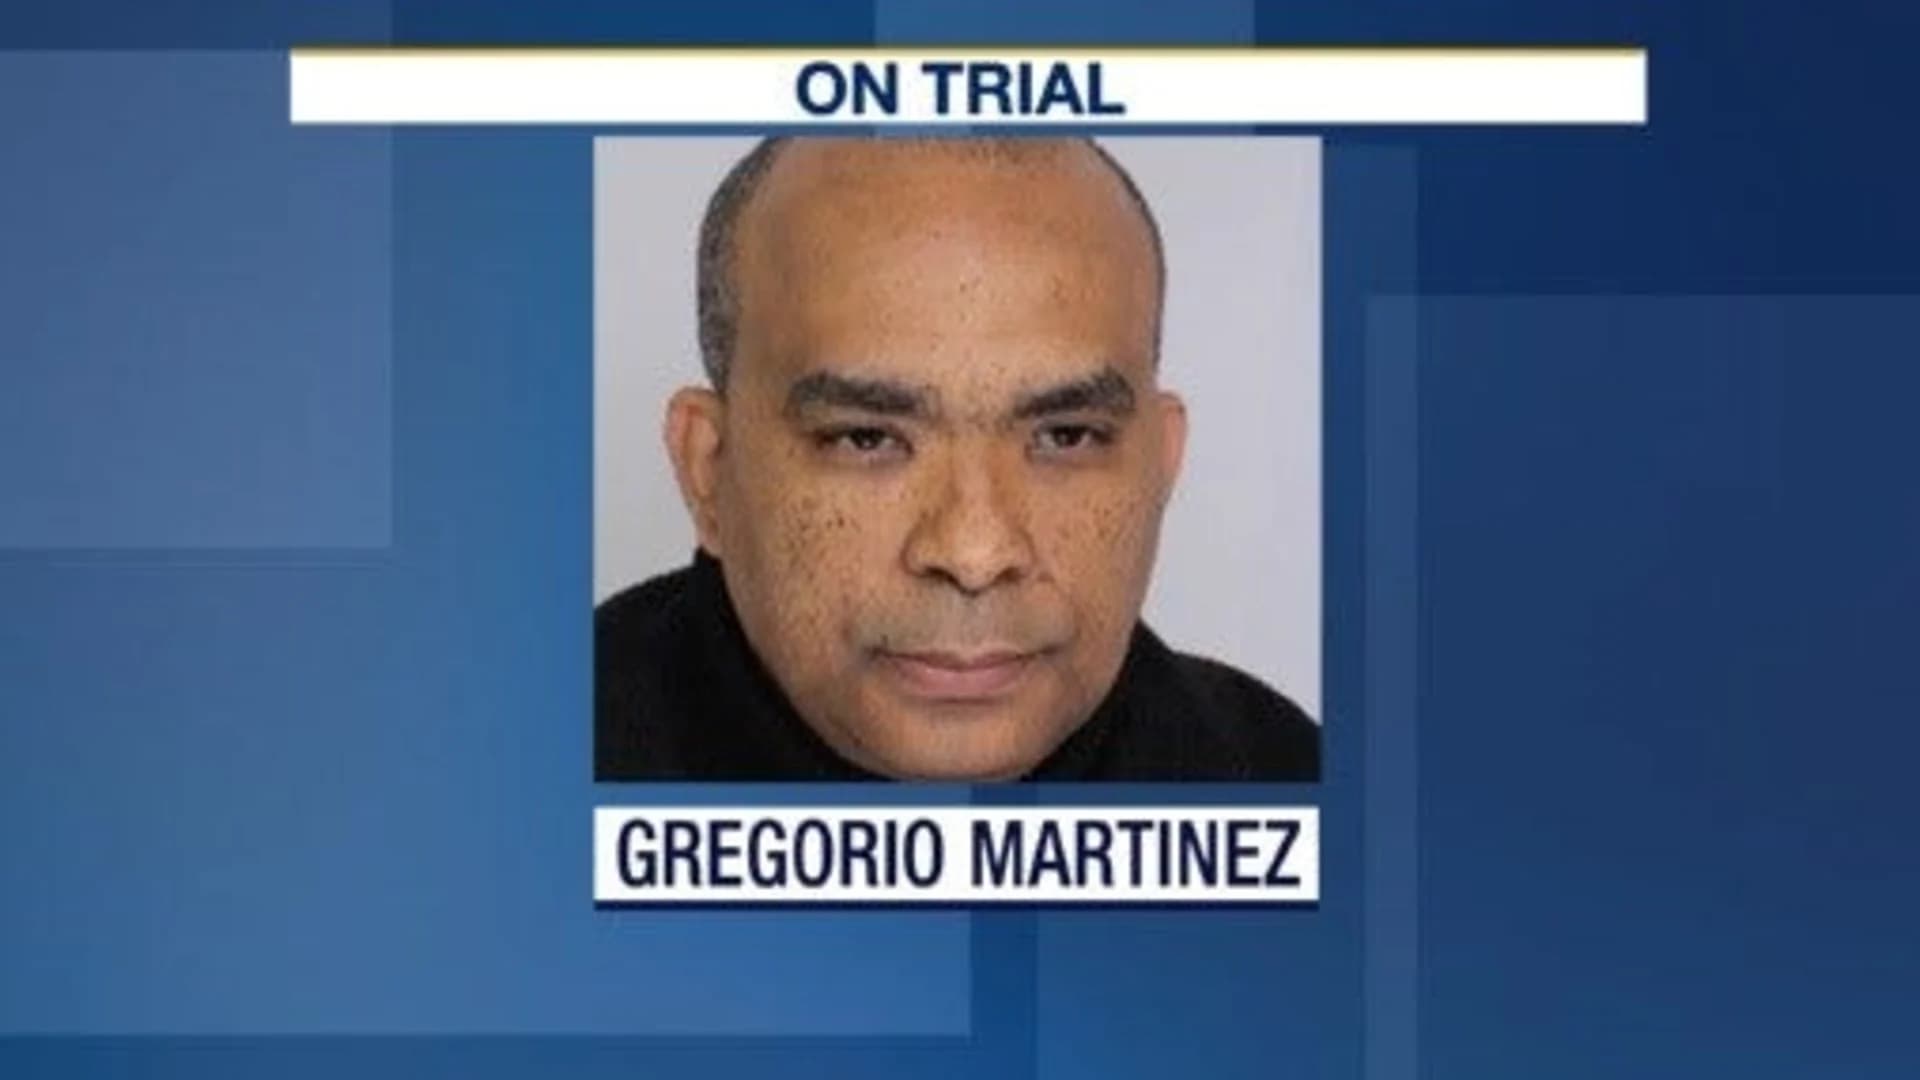 No verdict yet in sexual assault trial of former NJ pastor